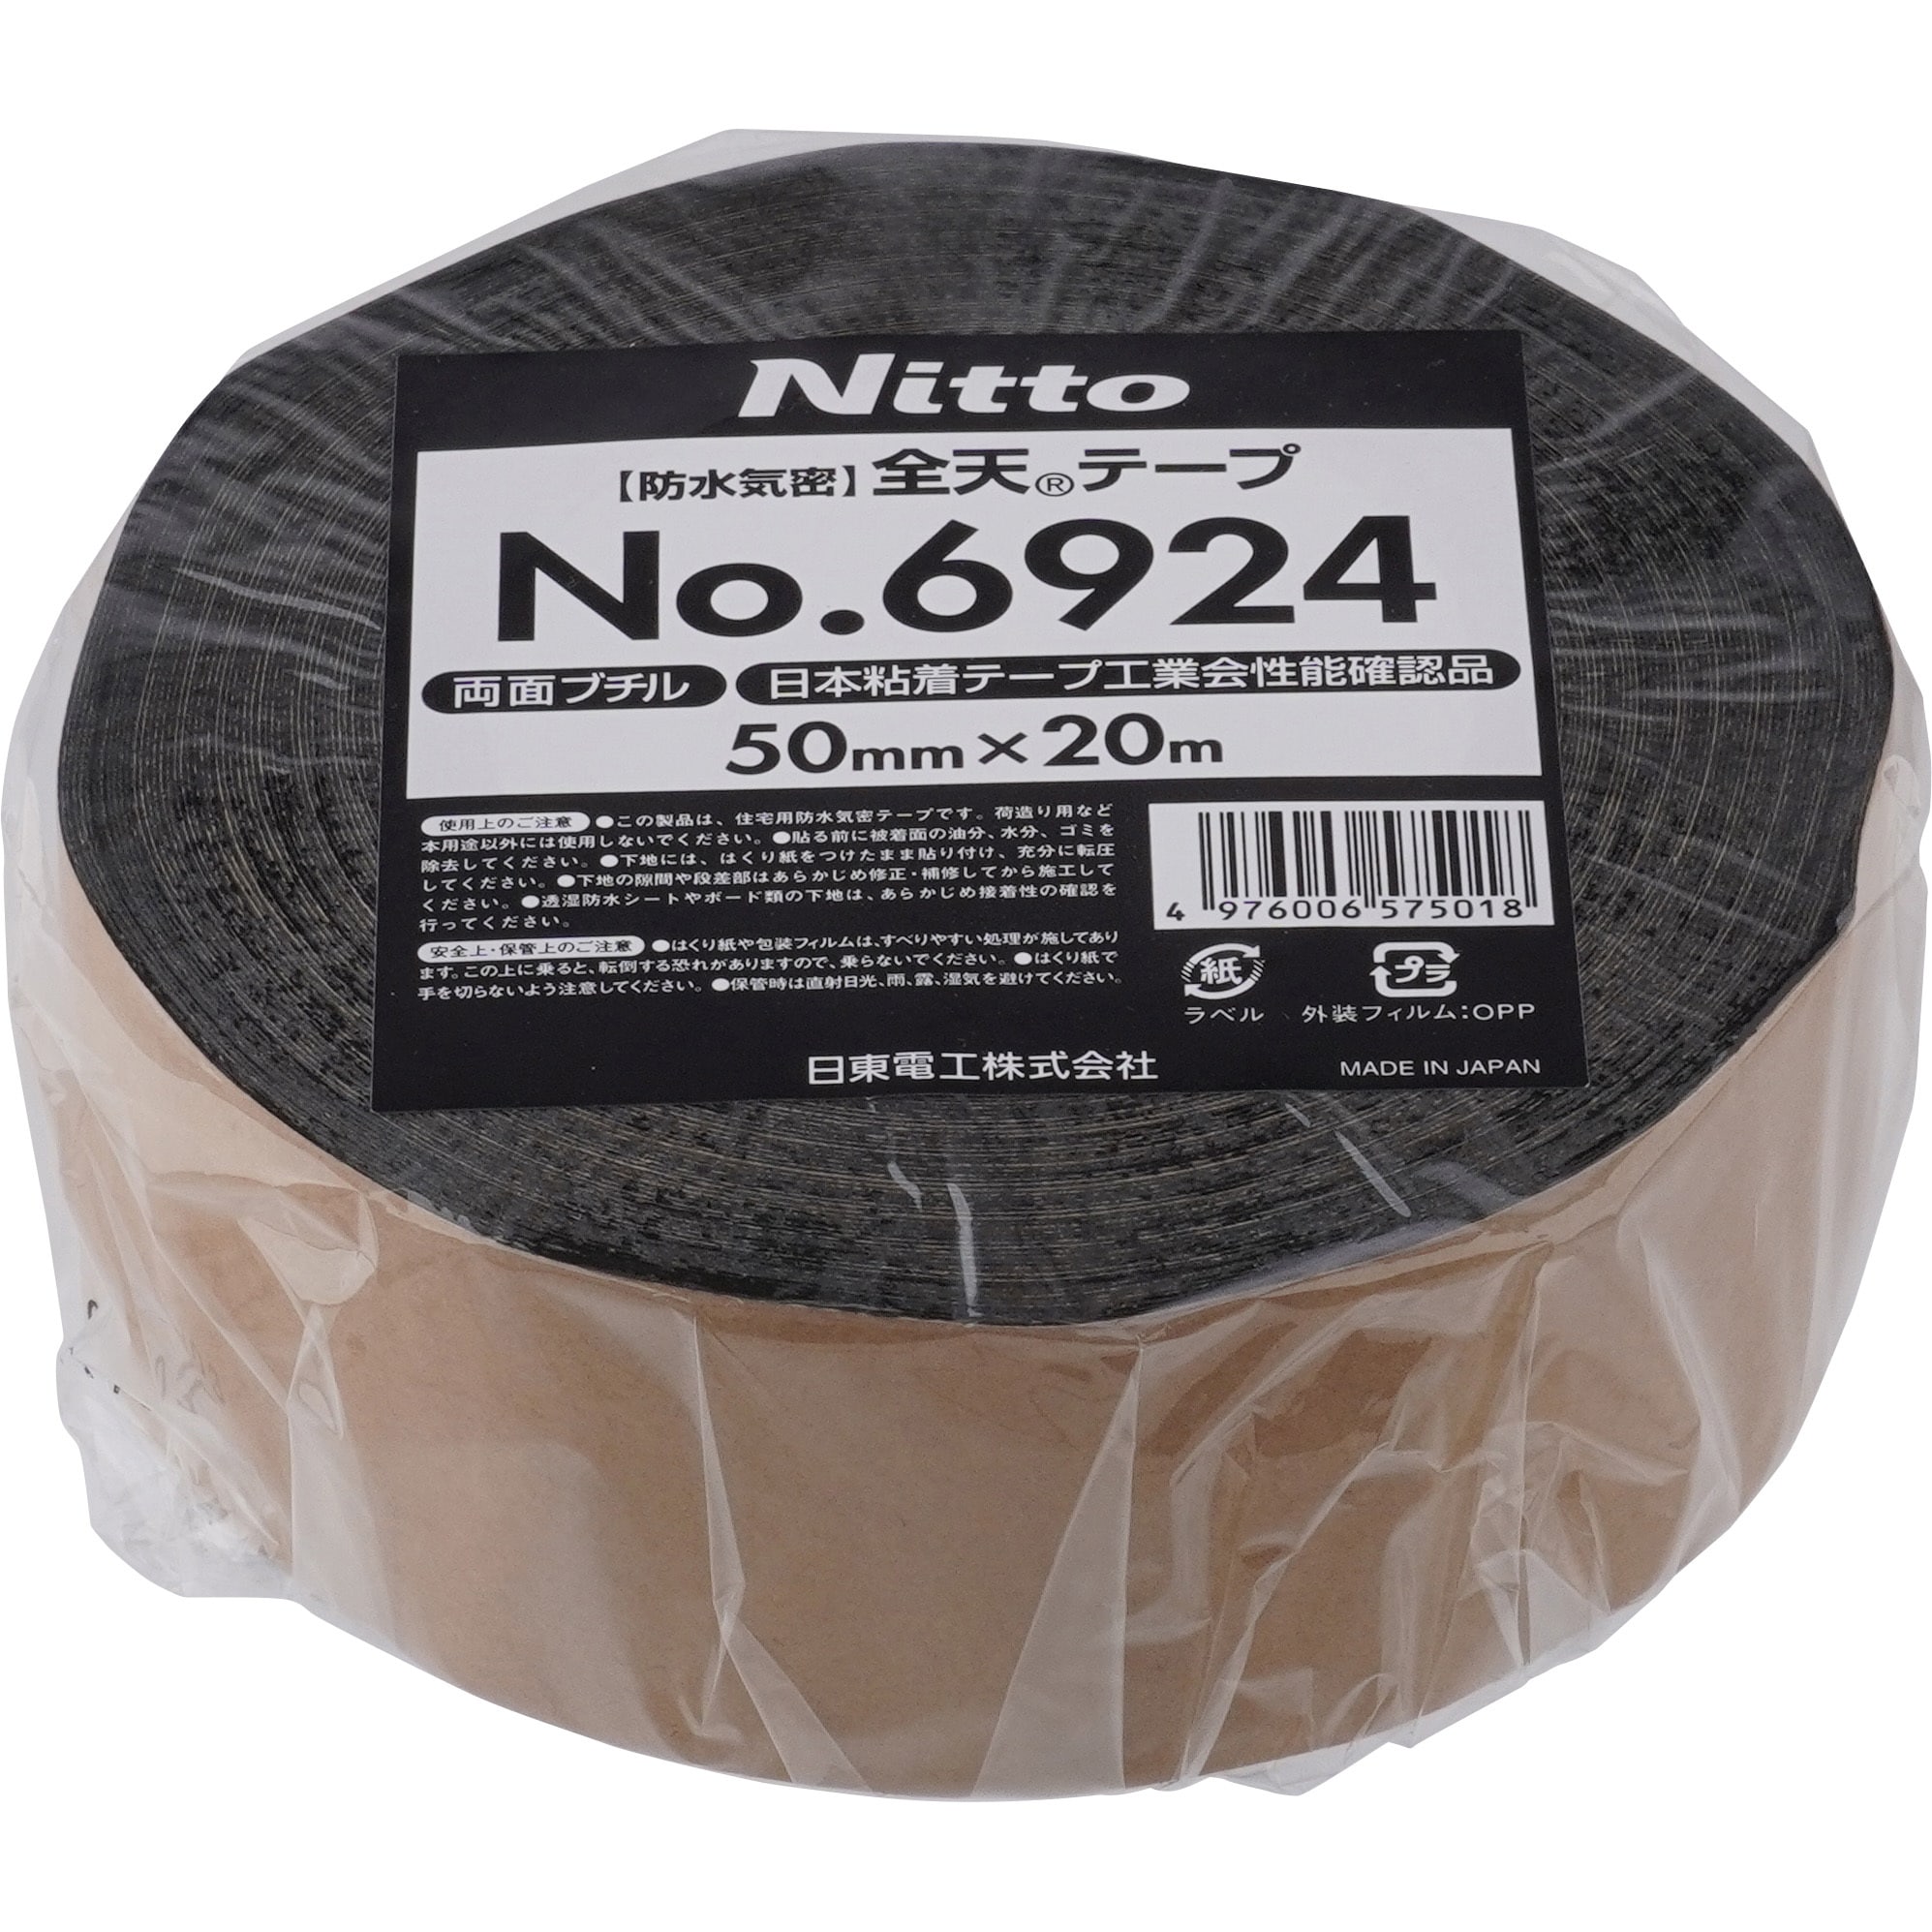 NITTO防水ブチルゴムテープ - メンテナンス用品